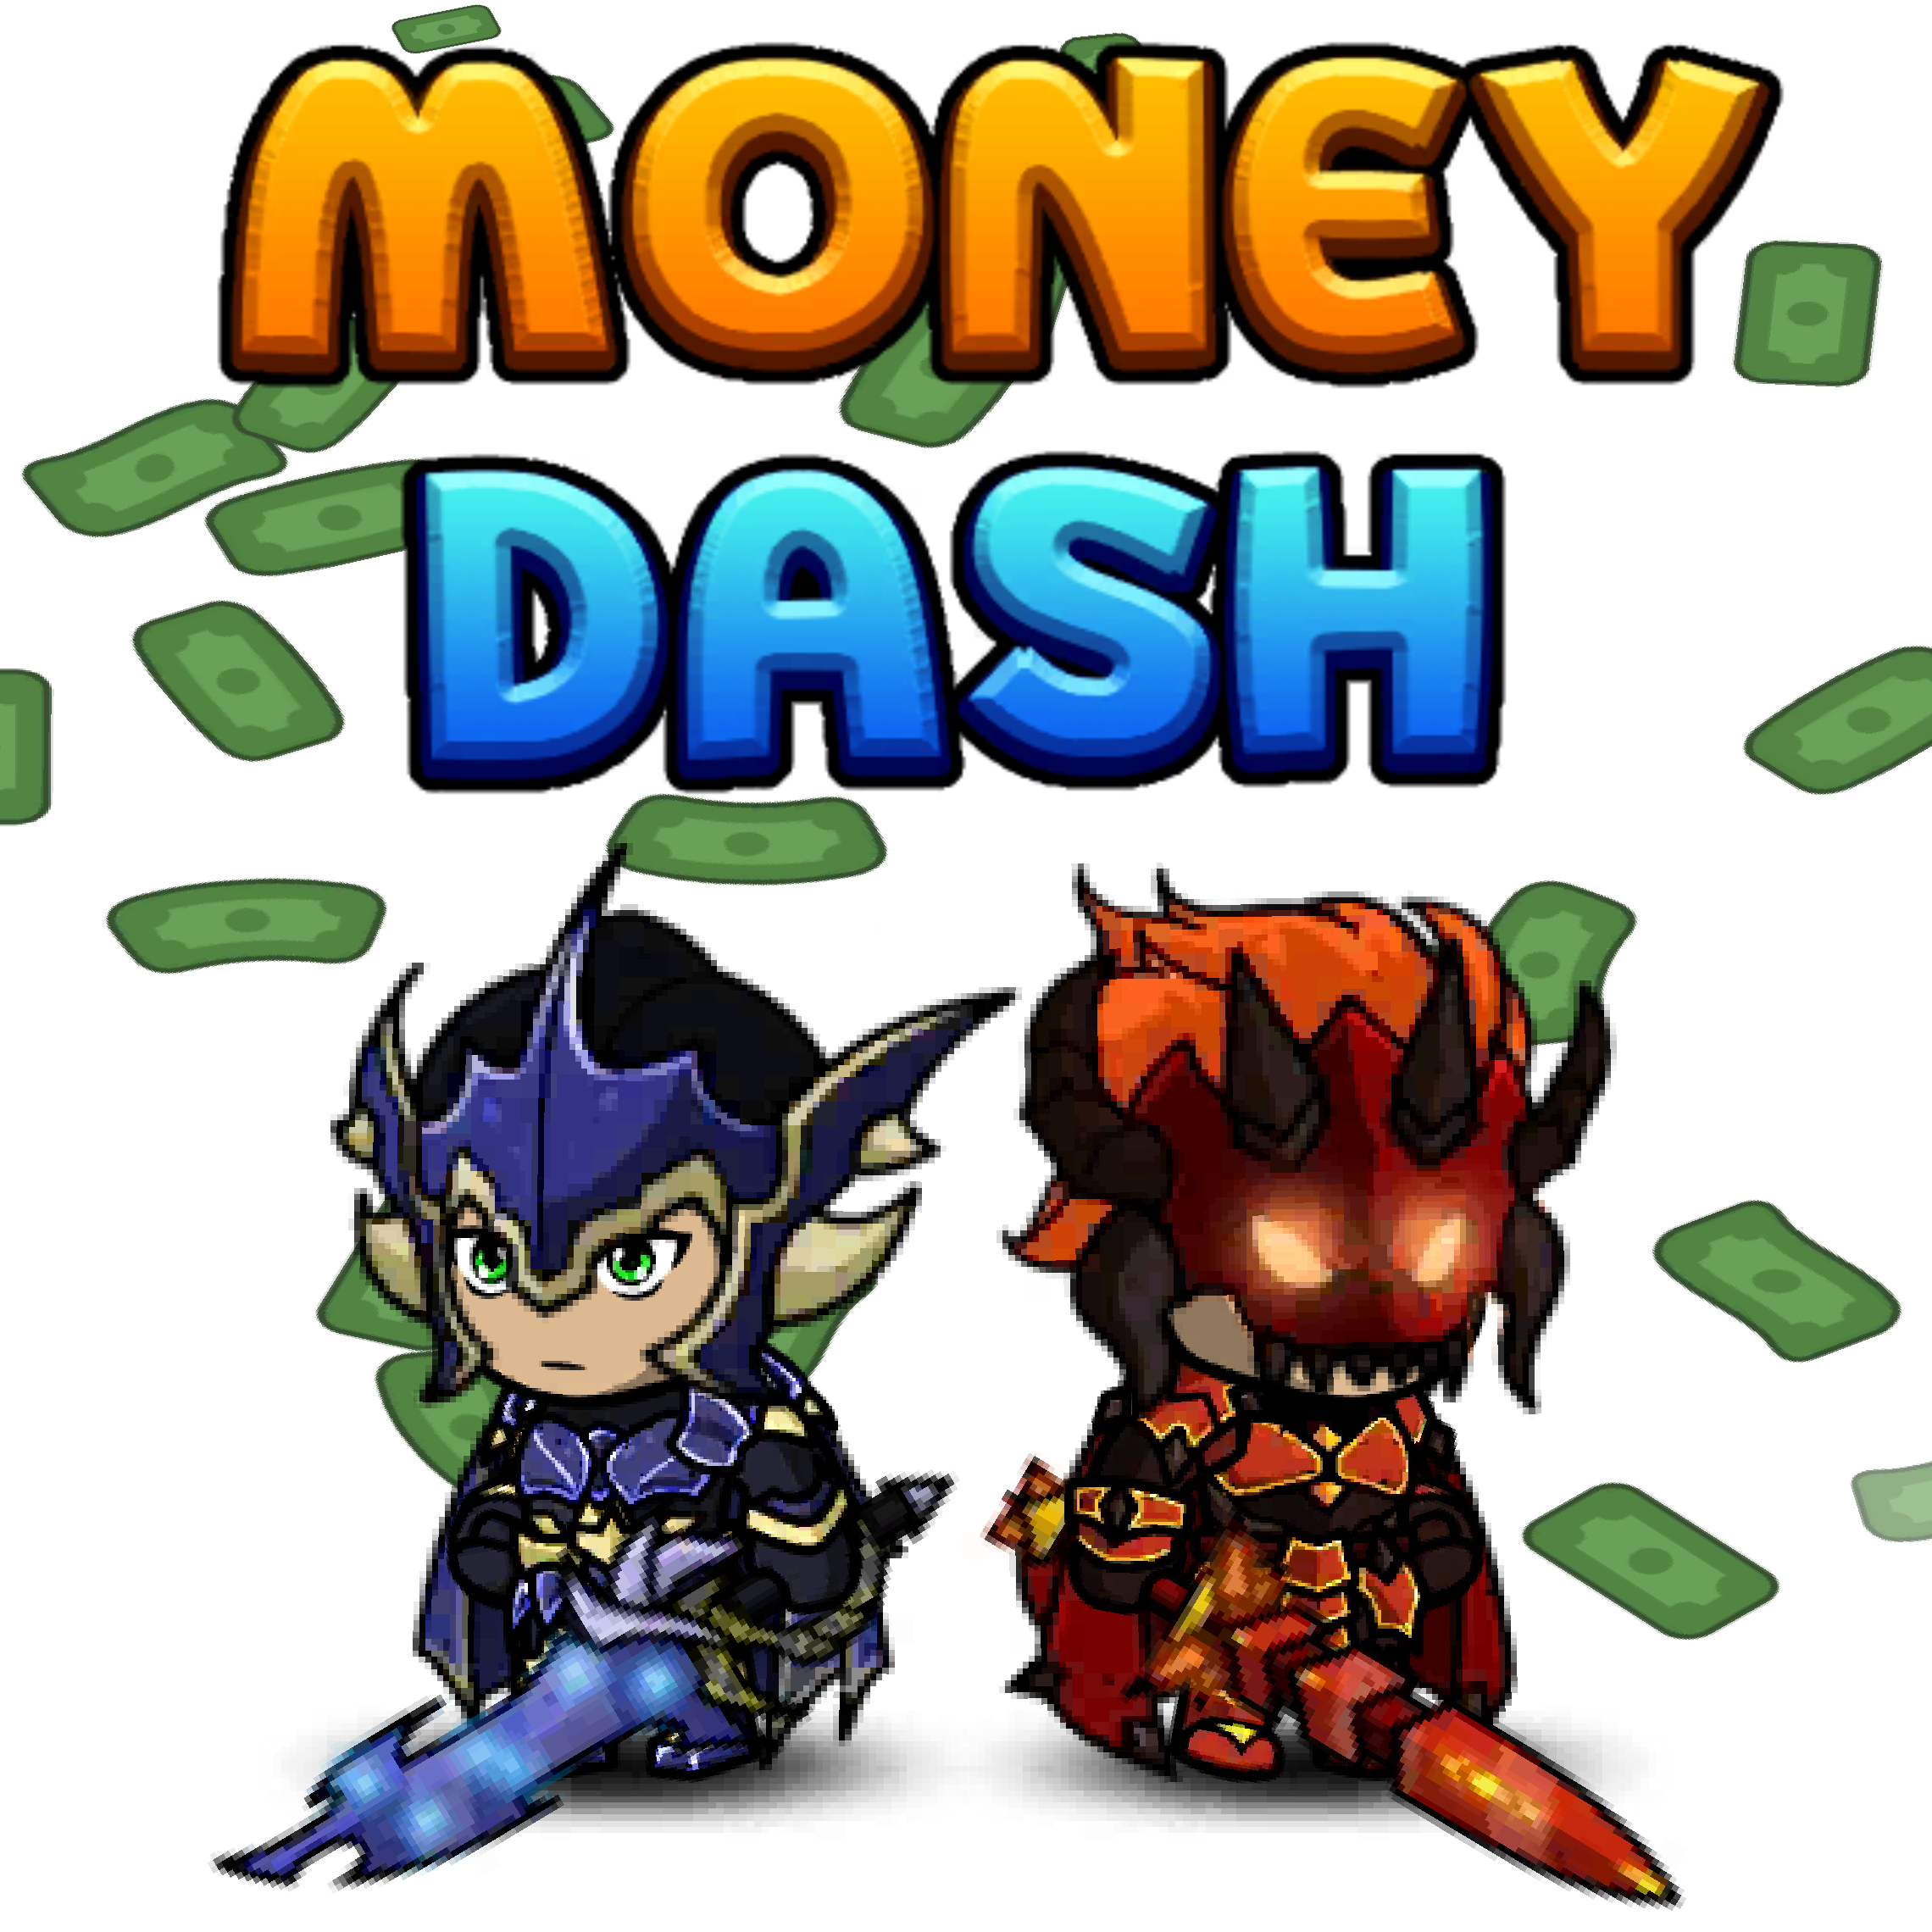 Money Dash